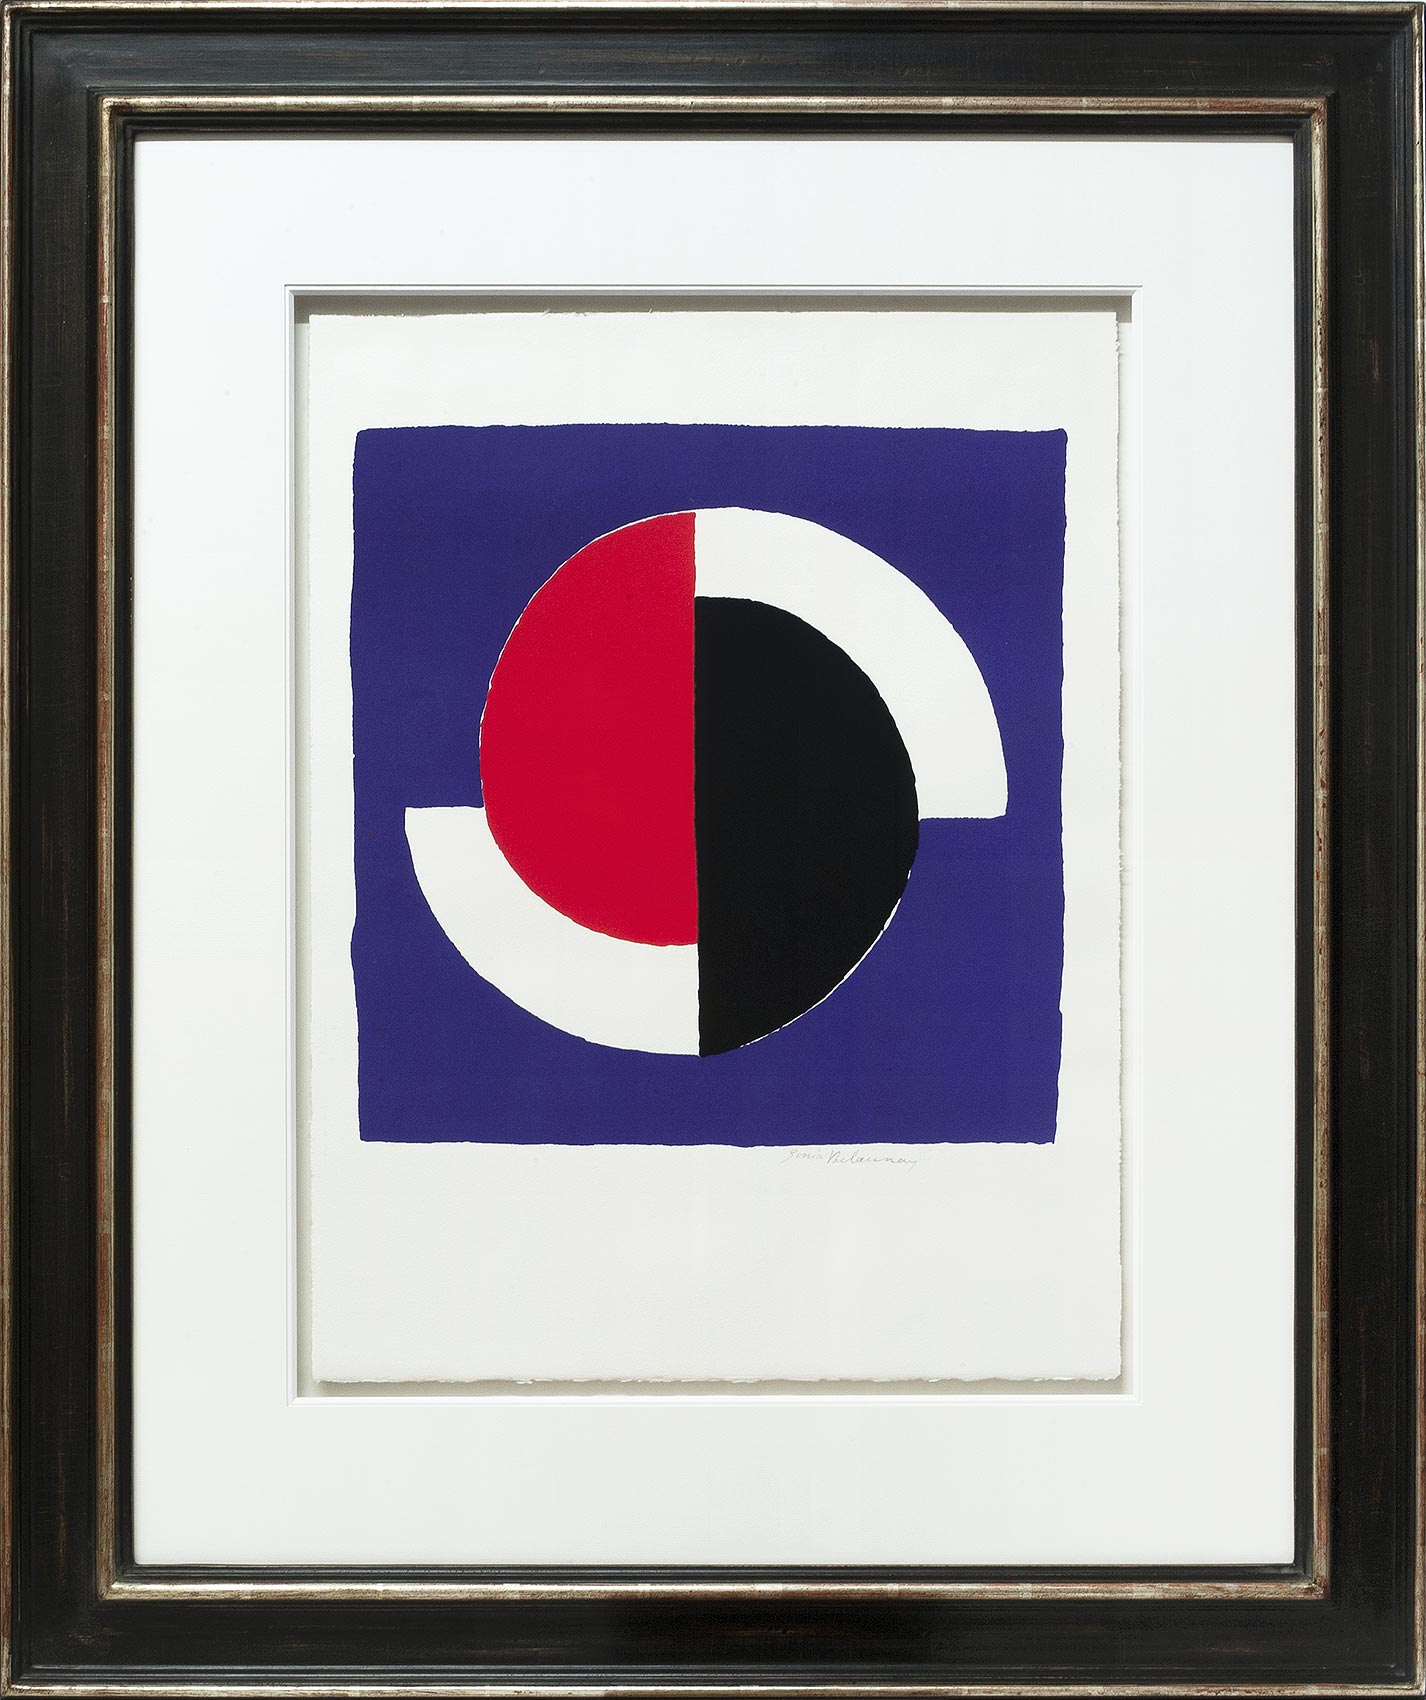 Sonia Delaunay, Cercles rouge et noir, Galerie Française